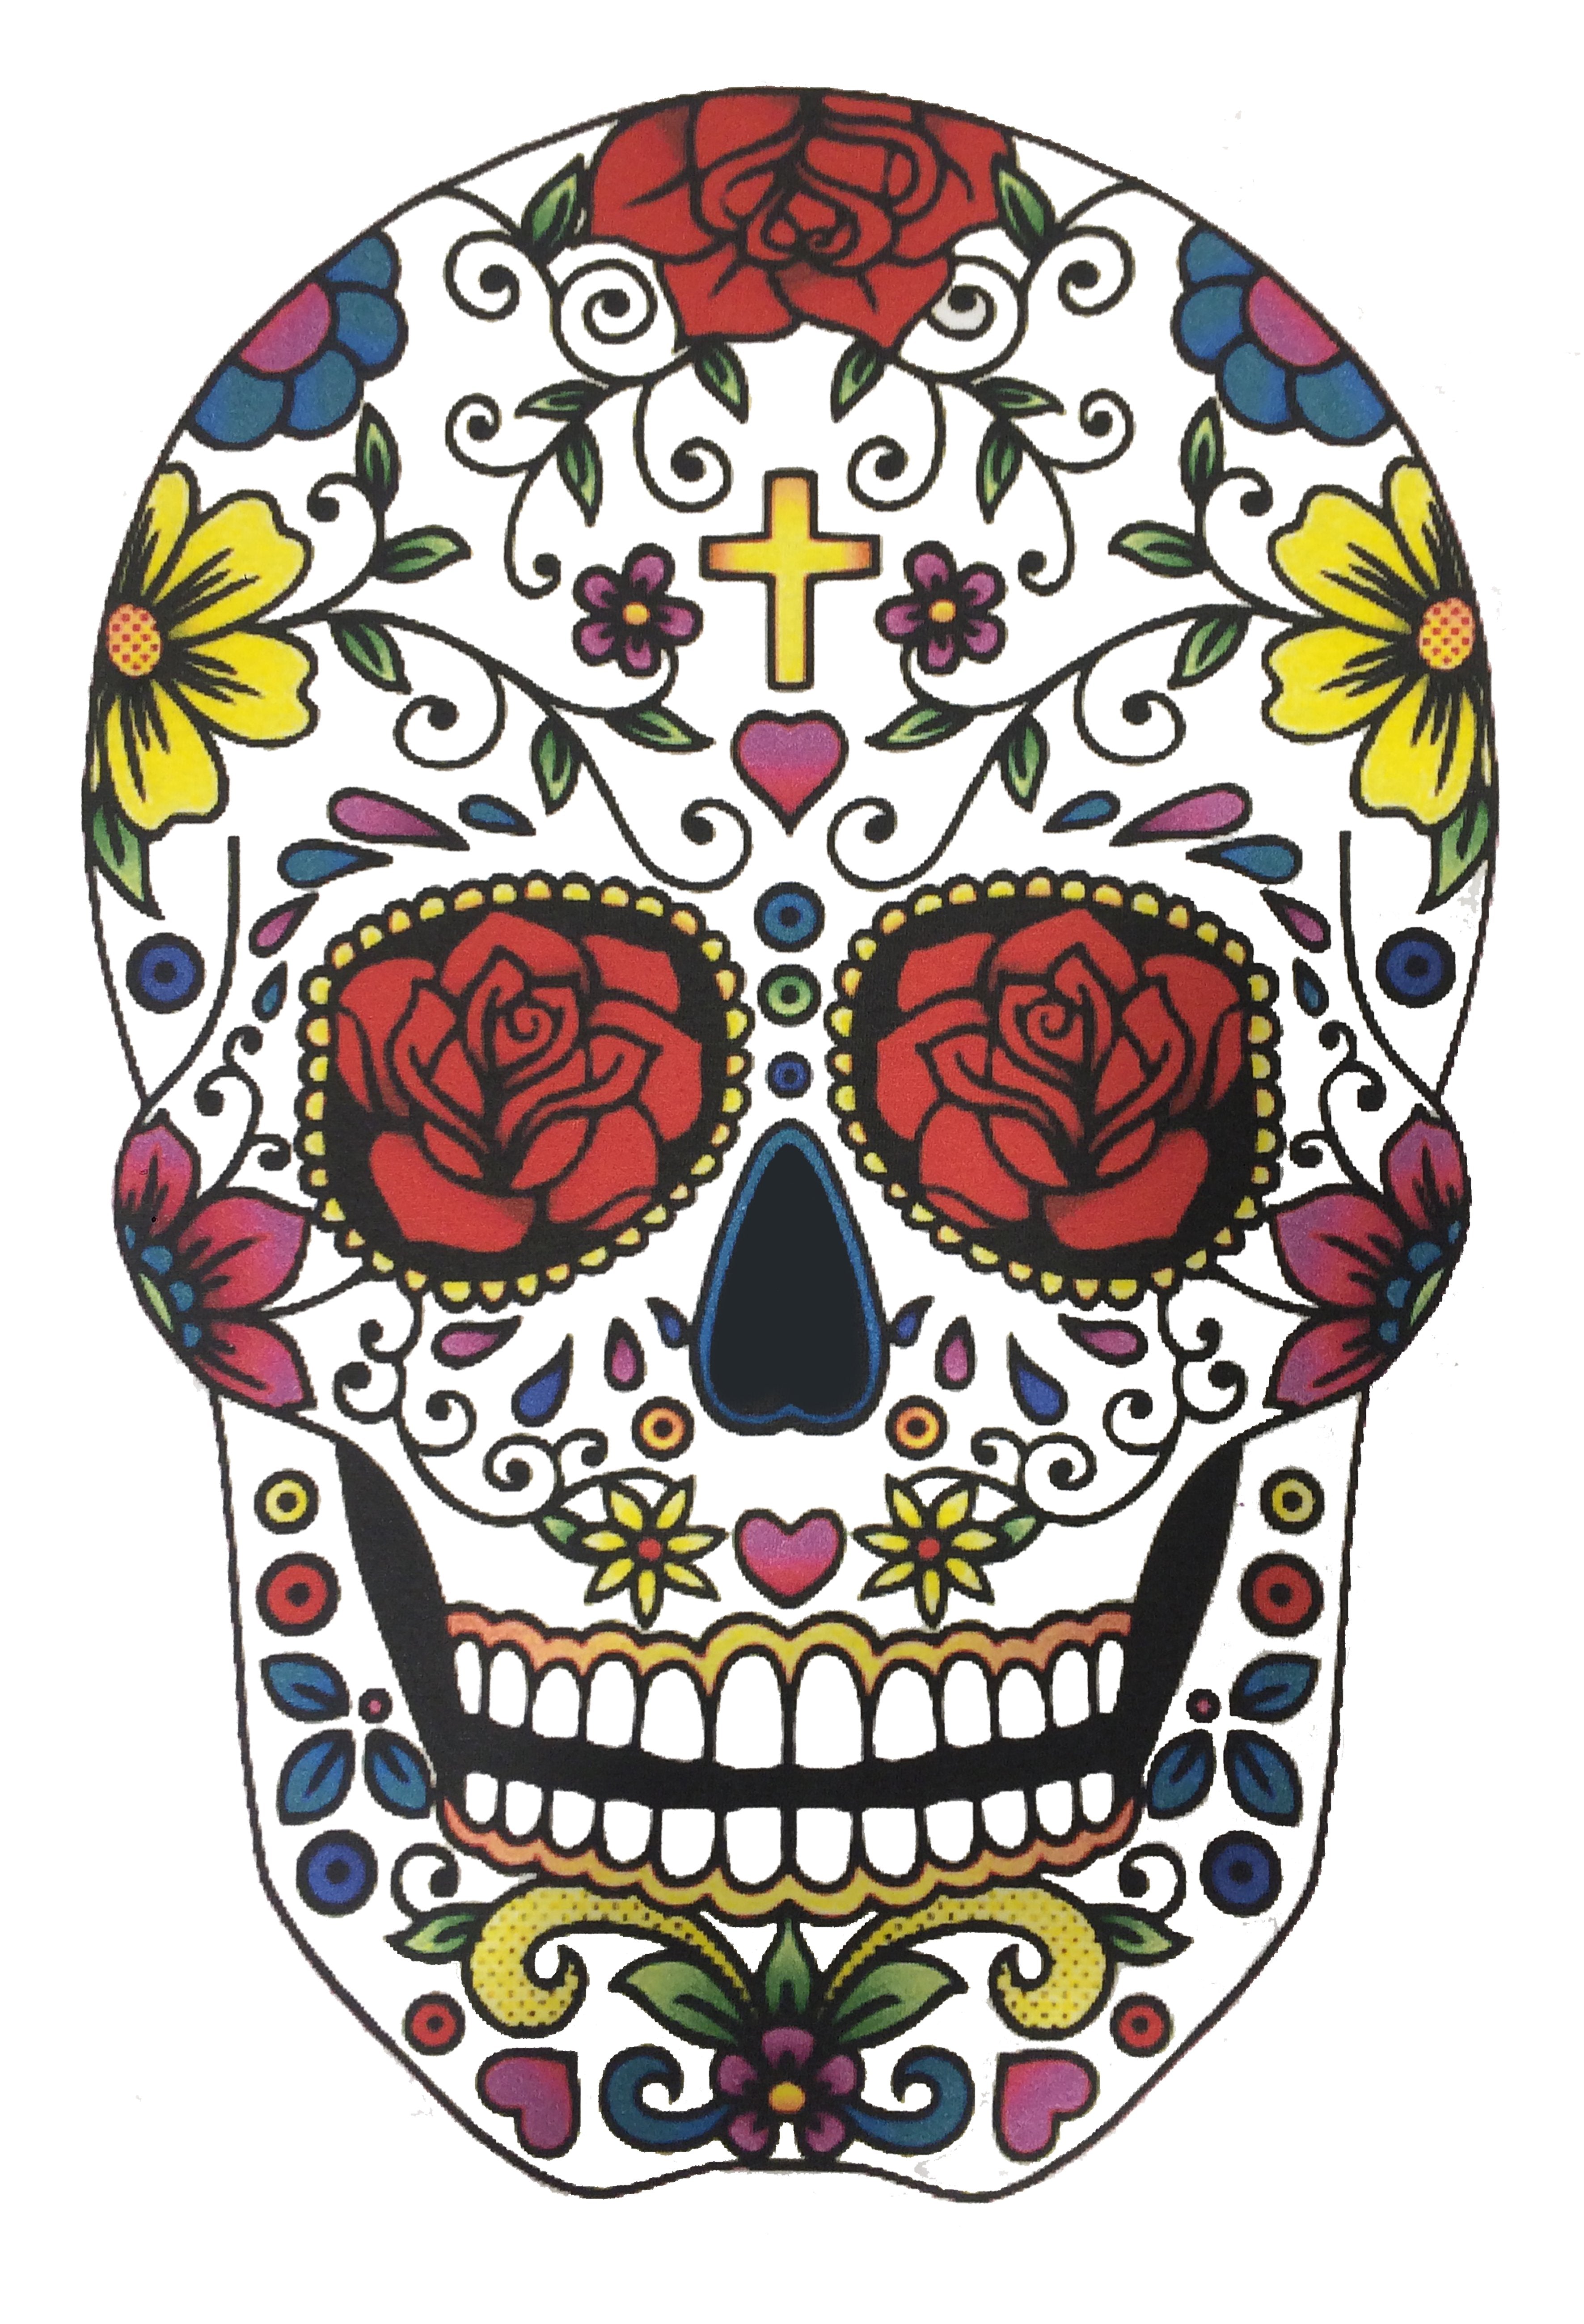 Mexican Skull T-Shirt - Tattoo Old School